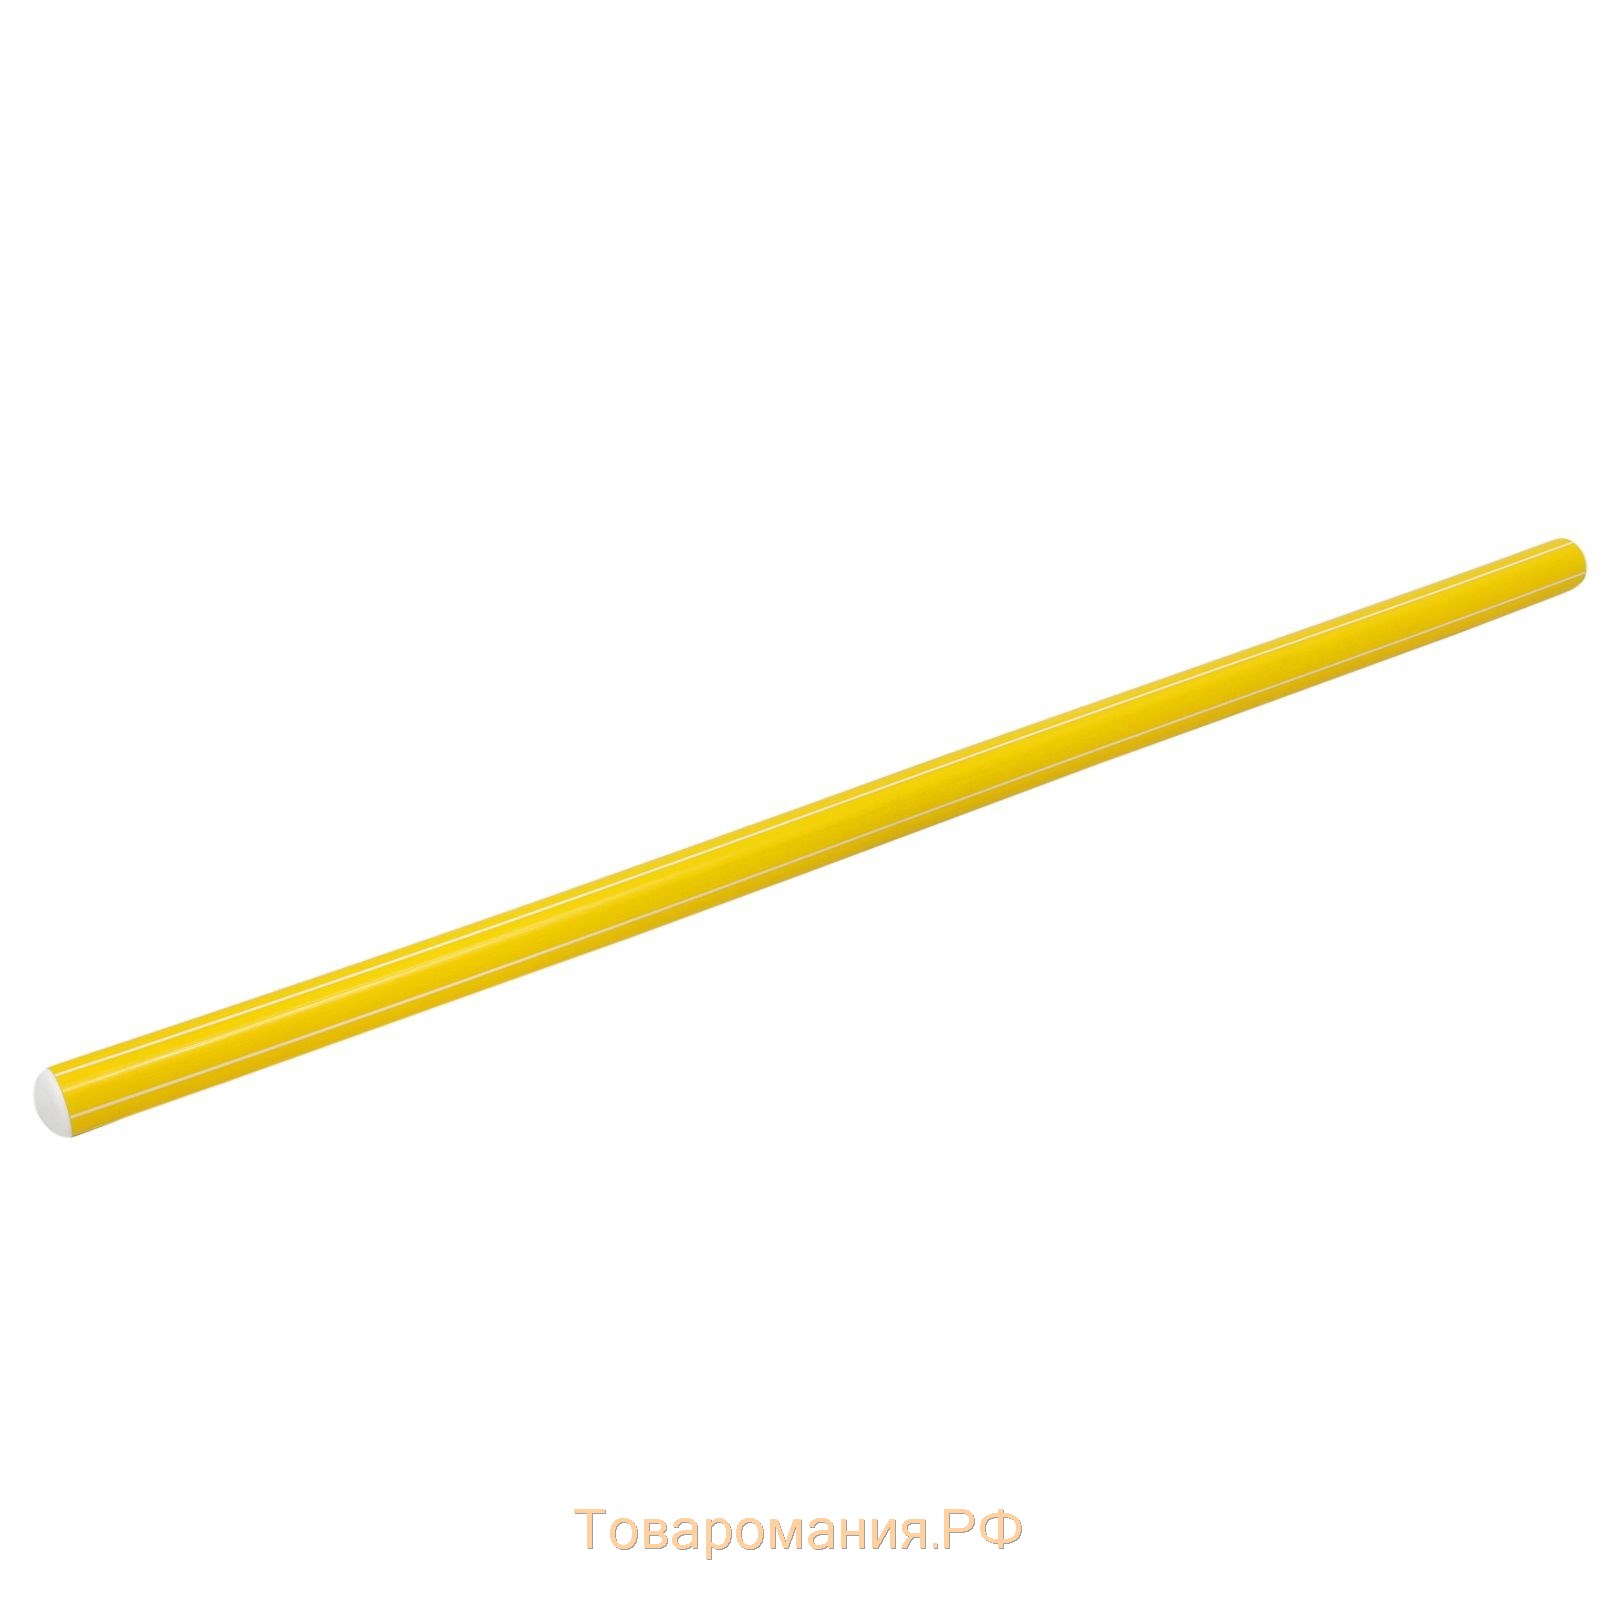 Палка гимнастическая 70 см, цвет жёлтый